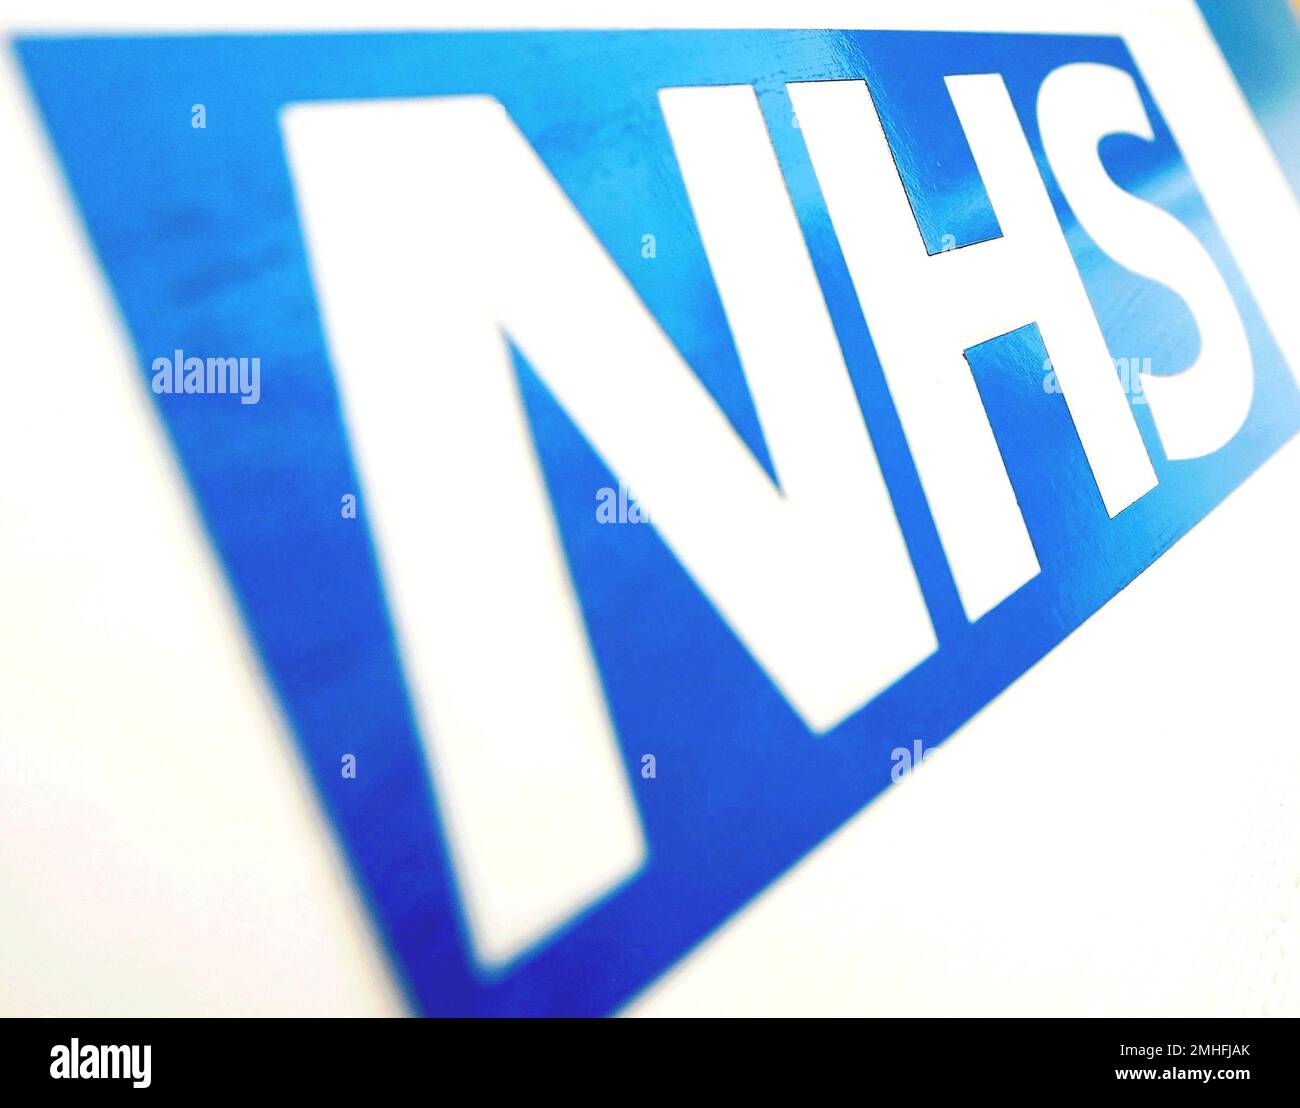 Photo du dossier datée du 06/11/10 du logo du NHS, alors que les personnes atteintes de cire d'oreille impactée au Royaume-Uni ont du mal à entendre et ont besoin de services locaux d'enlèvement du NHS, une étude a trouvé. Banque D'Images